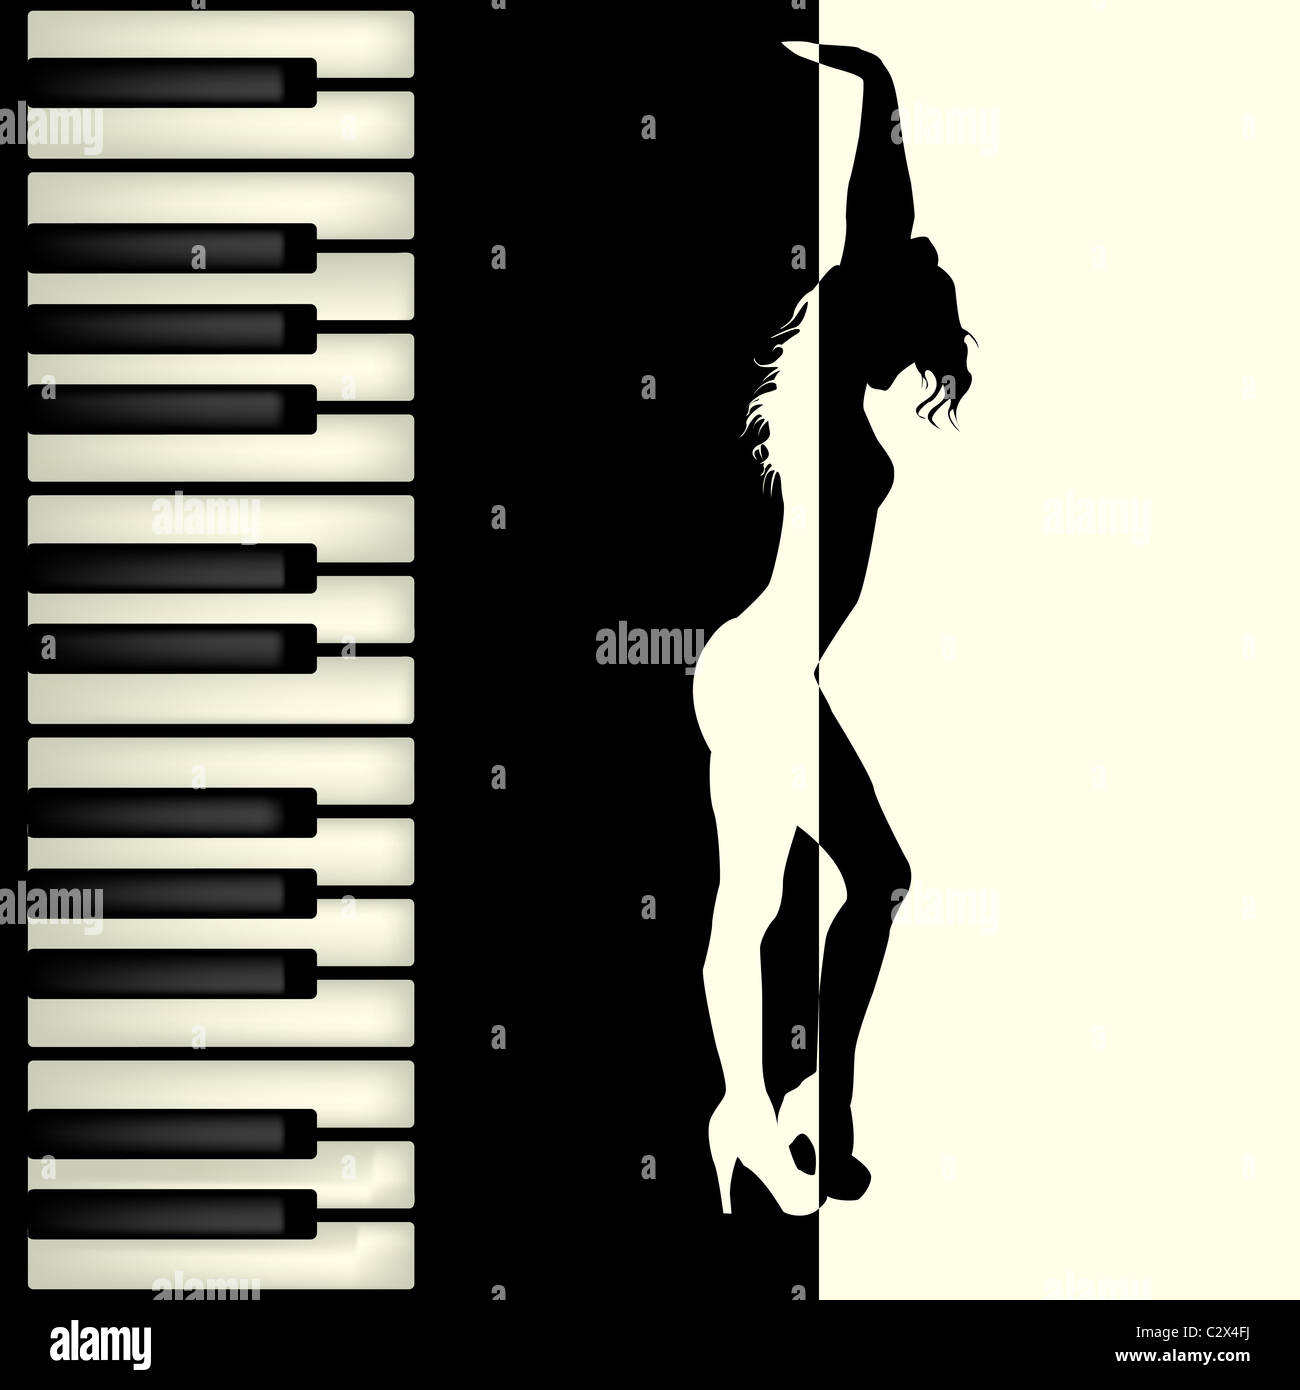 Piano bar brochure Stock Photo